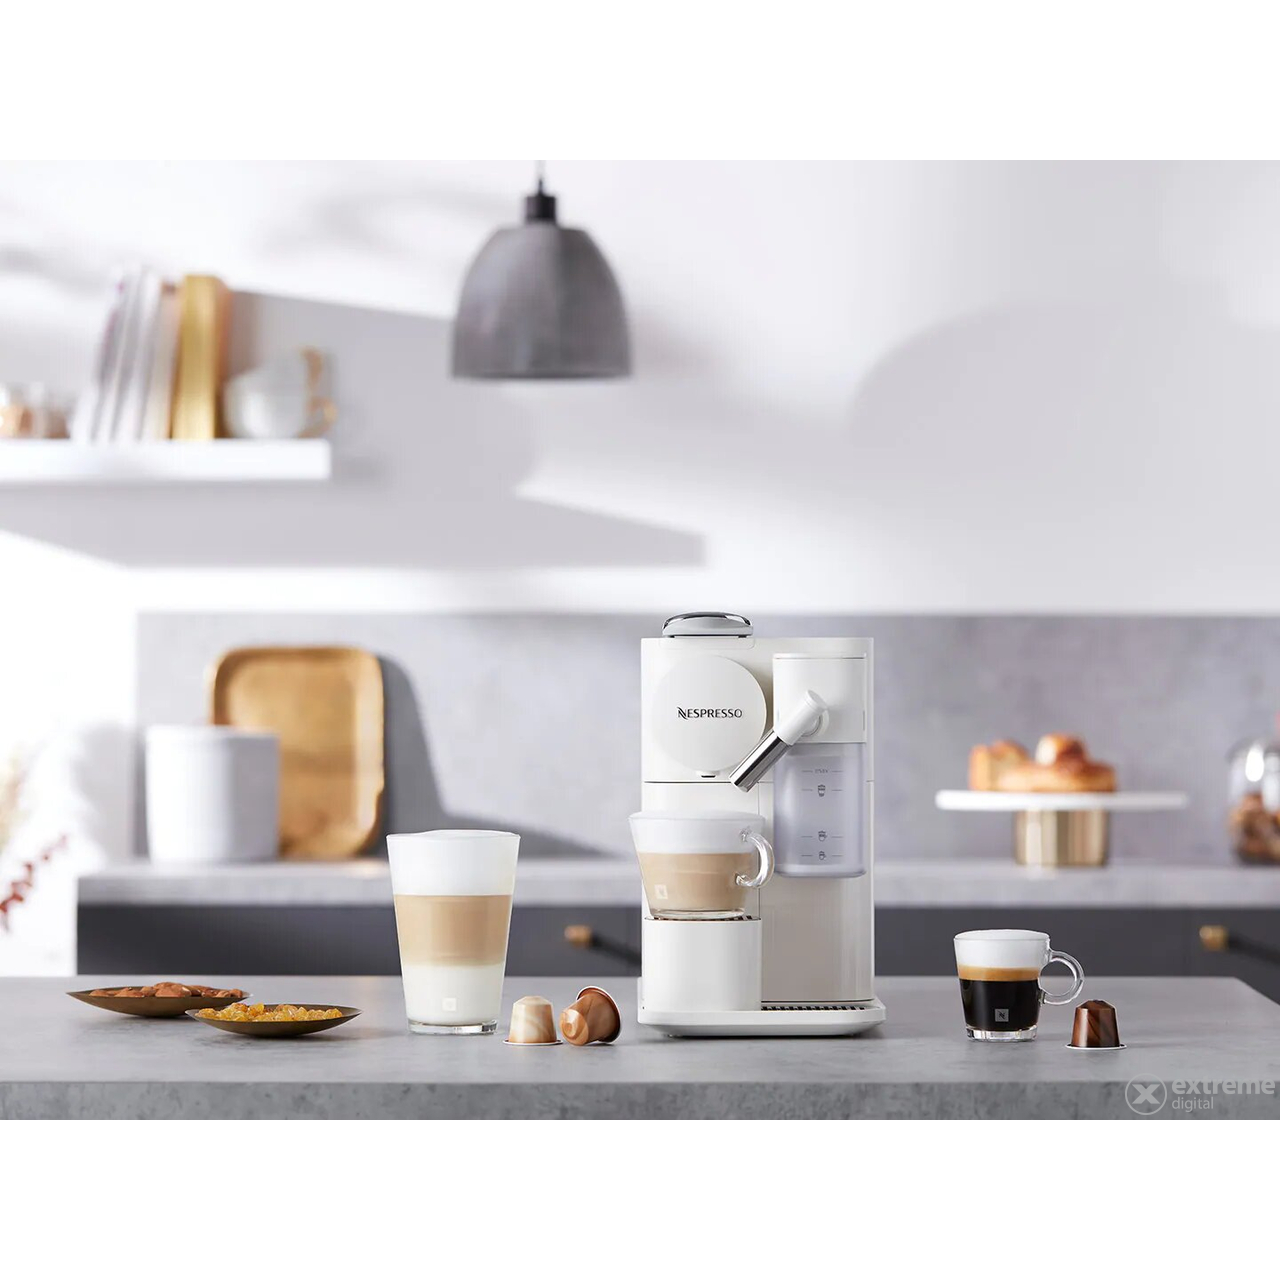 Nespresso-Delonghi EN510.W Lattissima OneEvo automatski aparat za kavu, bijeli